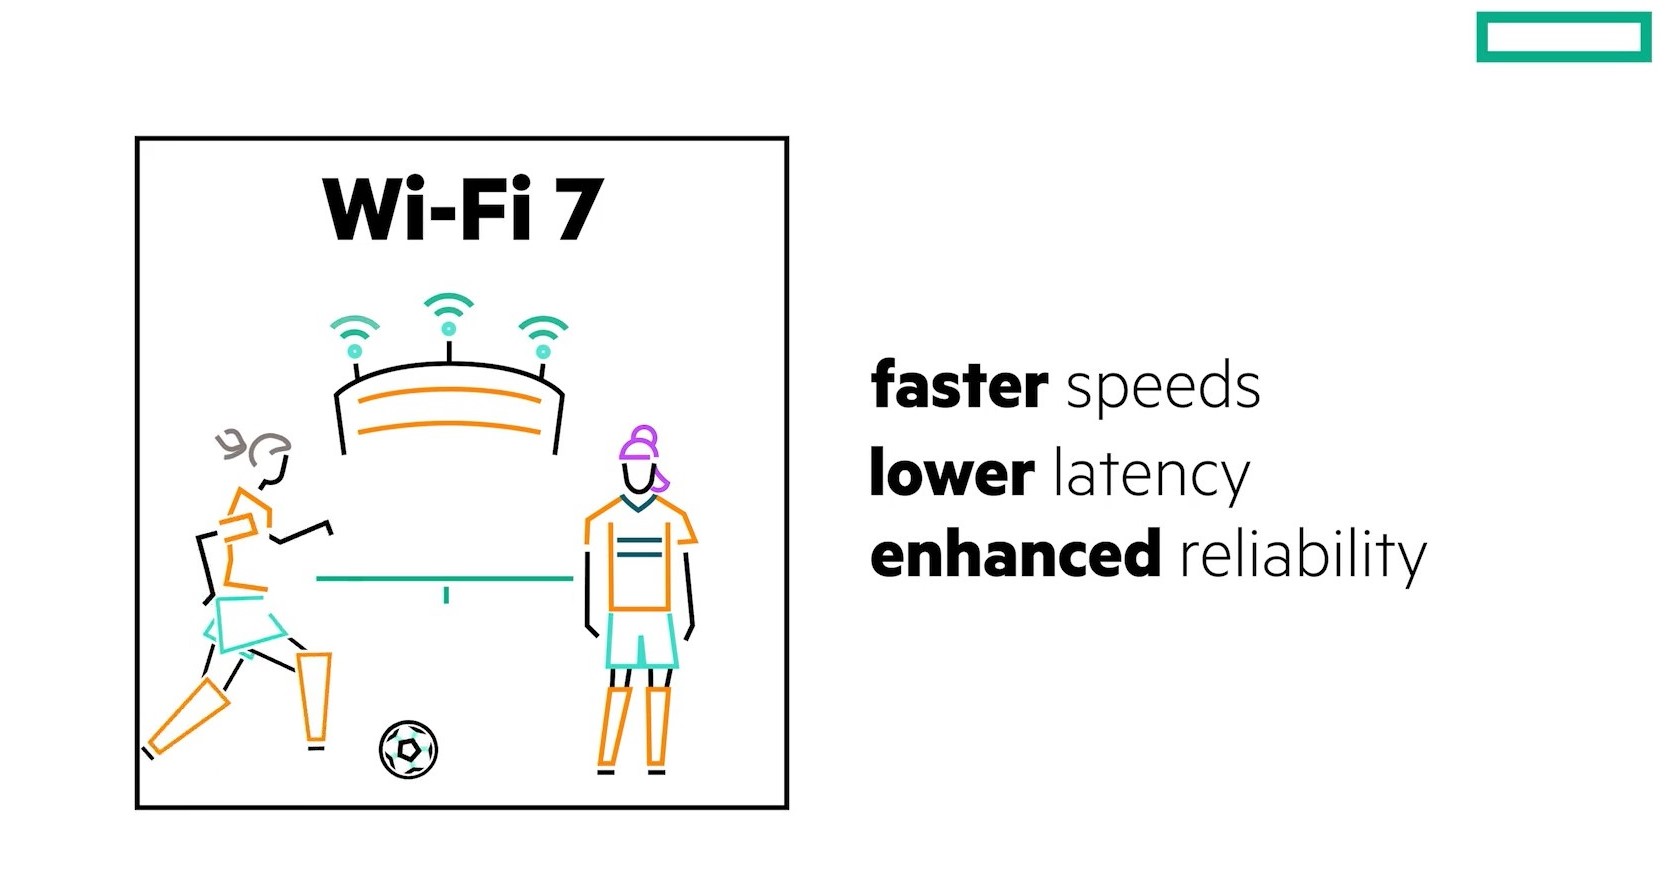 3wifi7 HPE Aruba Networking เปิดตัวอุปกรณ์กระจายสัญญาณ Wi Fi 7 ประสิทธิภาพสูง เพิ่มความปลอดภัยให้องค์กรช่วยแก้ปัญหาความท้าทายของ AI และ IoT